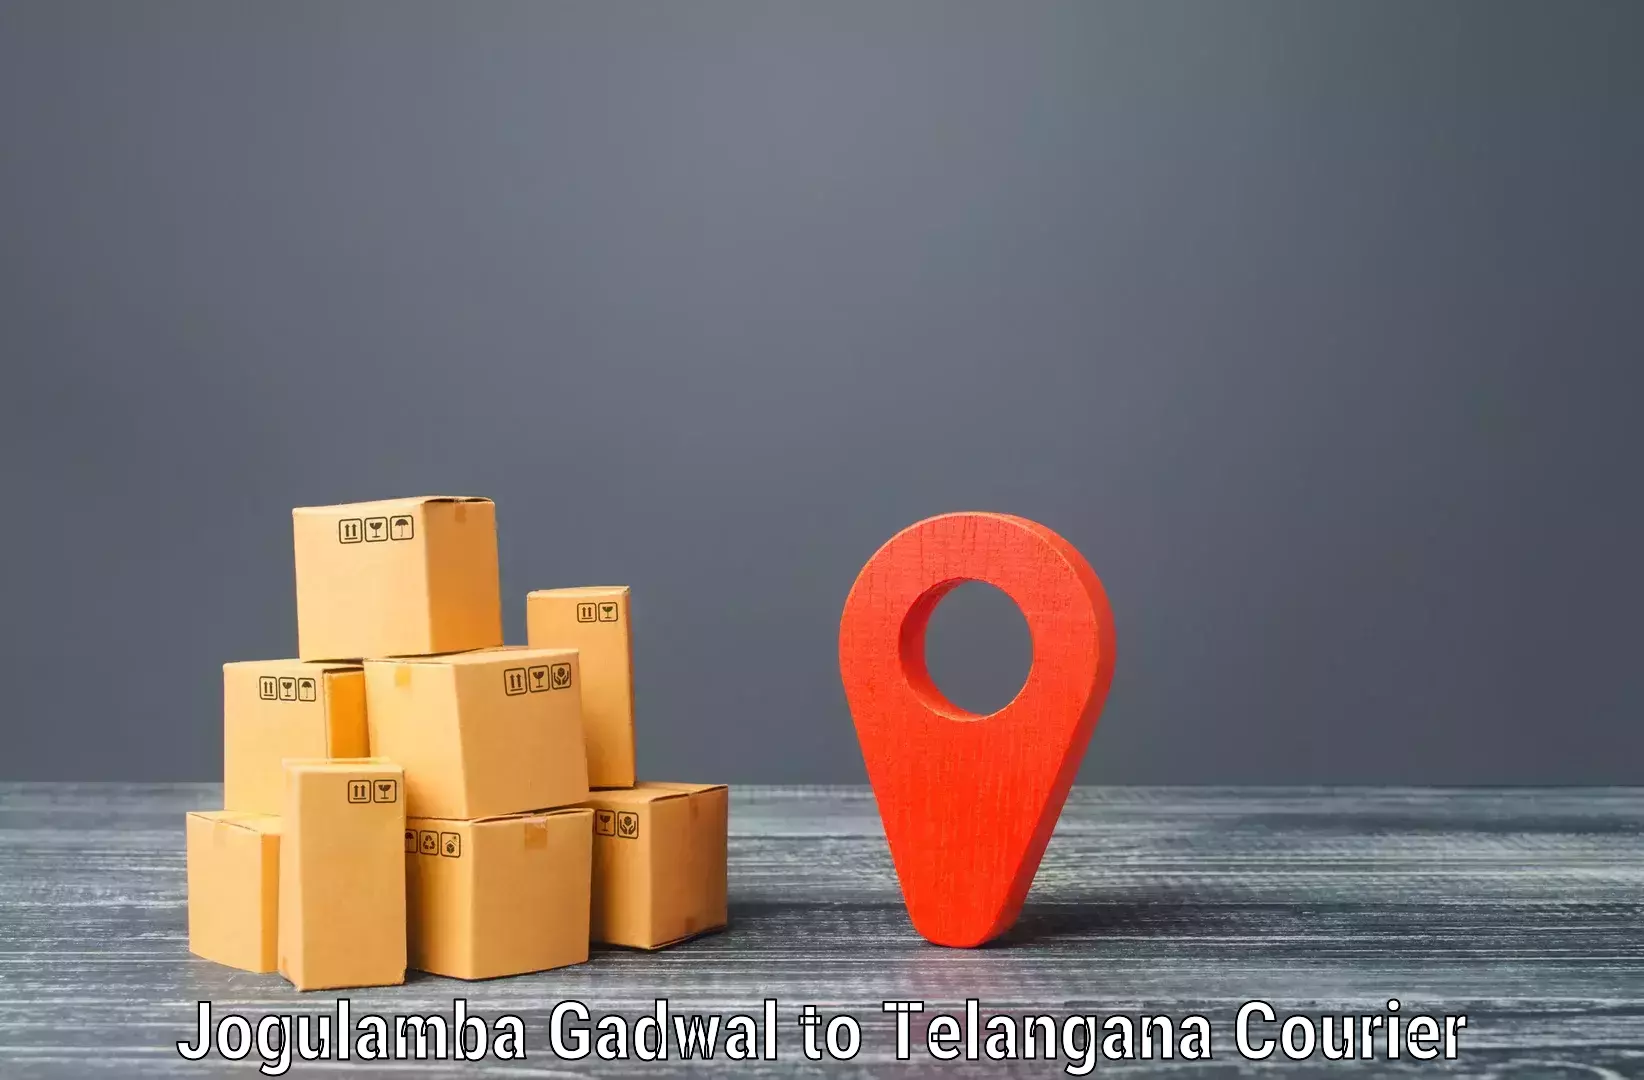 International courier networks Jogulamba Gadwal to Medchal